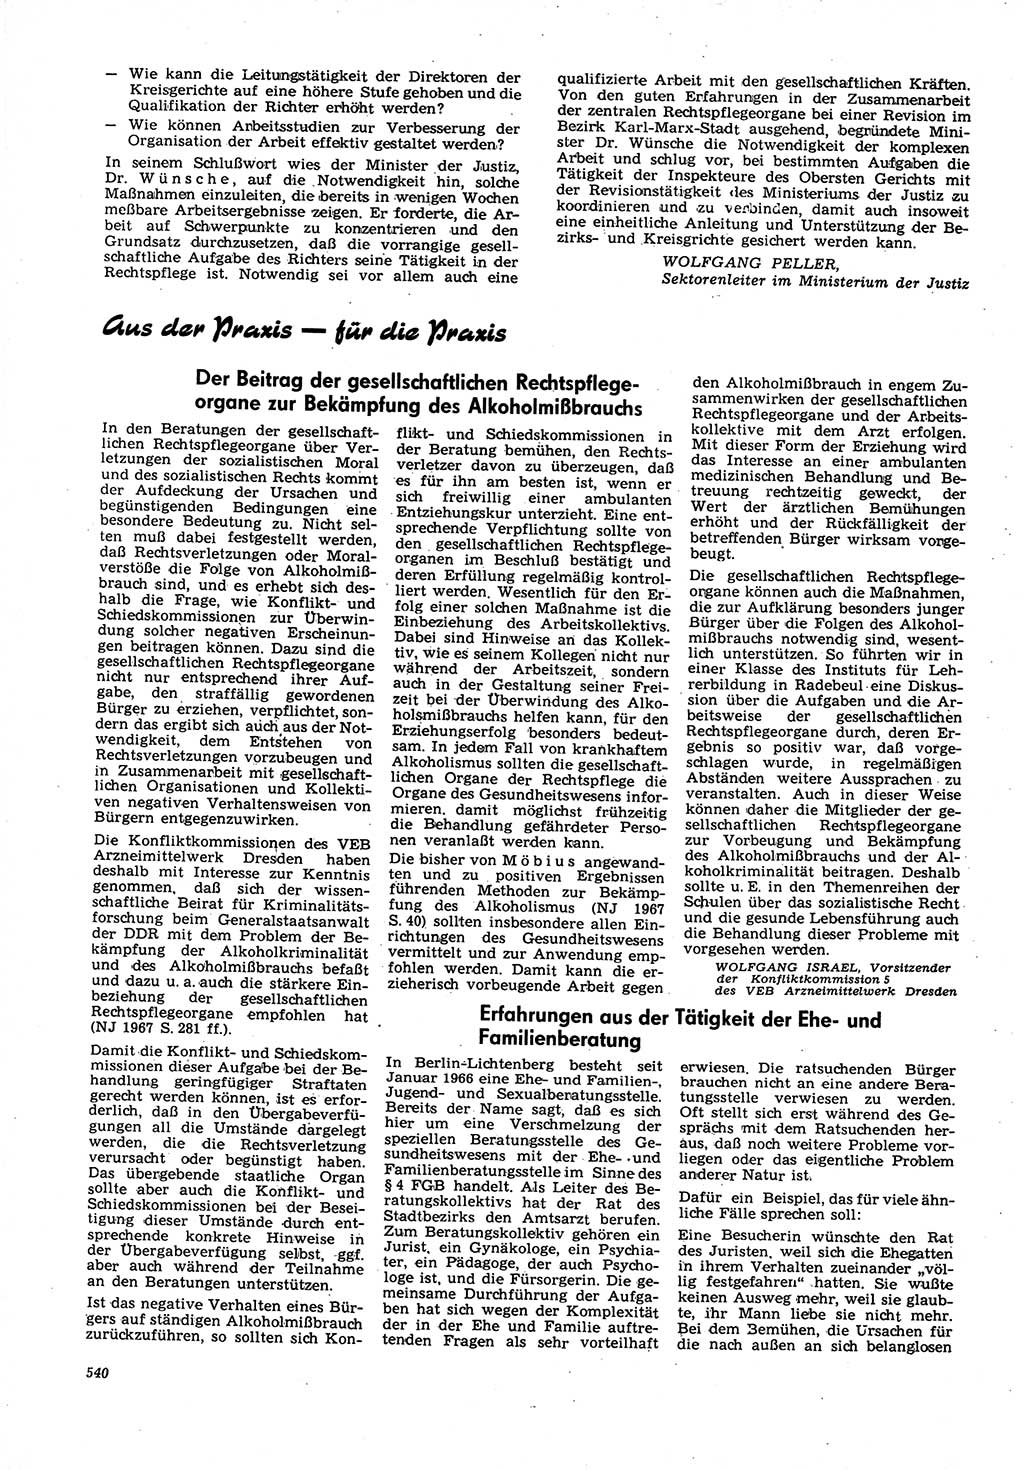 Neue Justiz (NJ), Zeitschrift für Recht und Rechtswissenschaft [Deutsche Demokratische Republik (DDR)], 21. Jahrgang 1967, Seite 540 (NJ DDR 1967, S. 540)